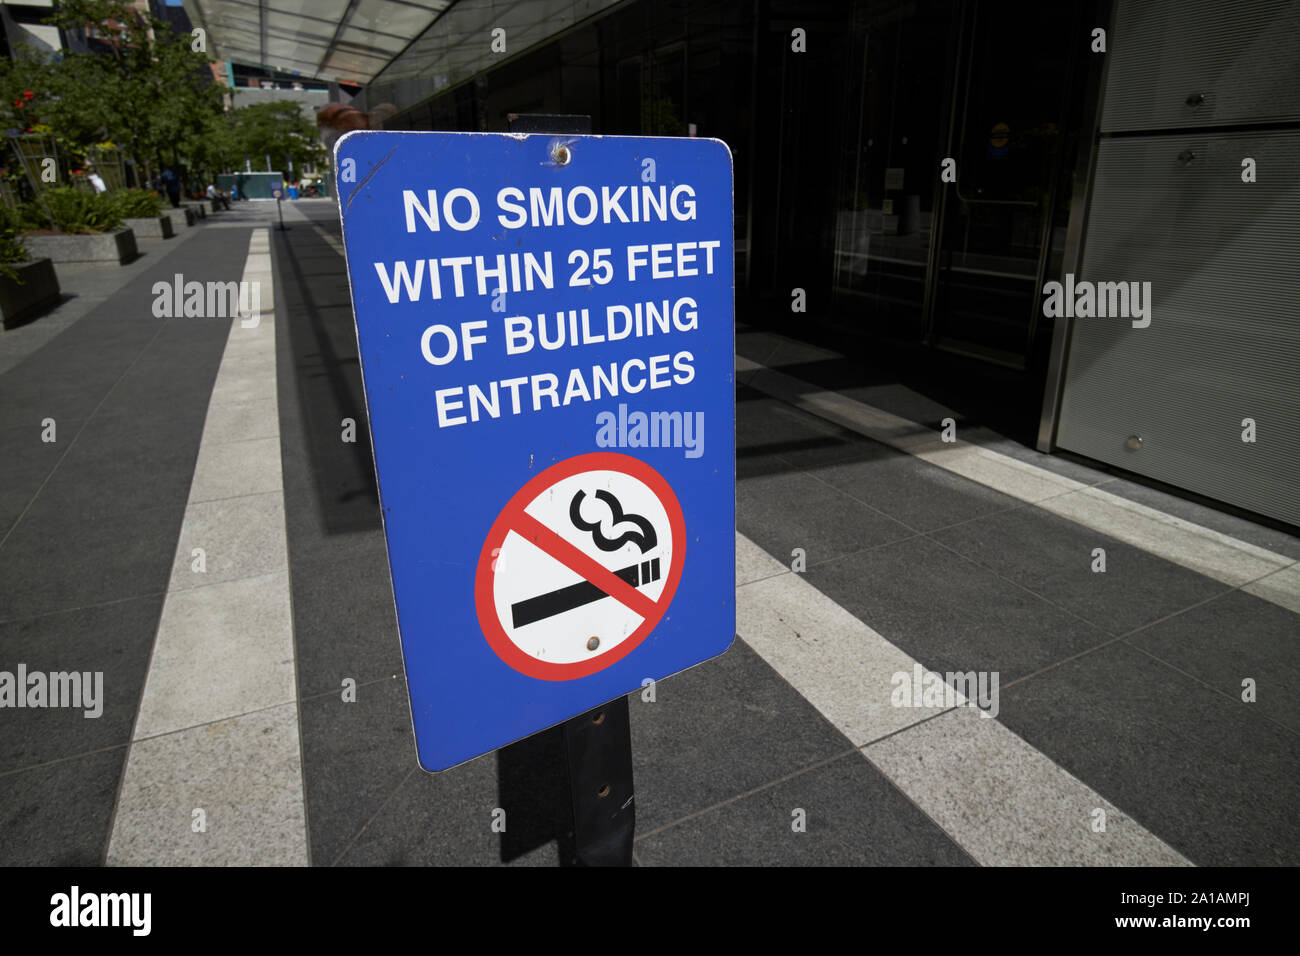 Zeichen für das Rauchen innerhalb von 25 Fuß von gebäudeeingängen außerhalb eines Gebäudes in Chicago Illinois Vereinigte Staaten von Amerika Stockfoto